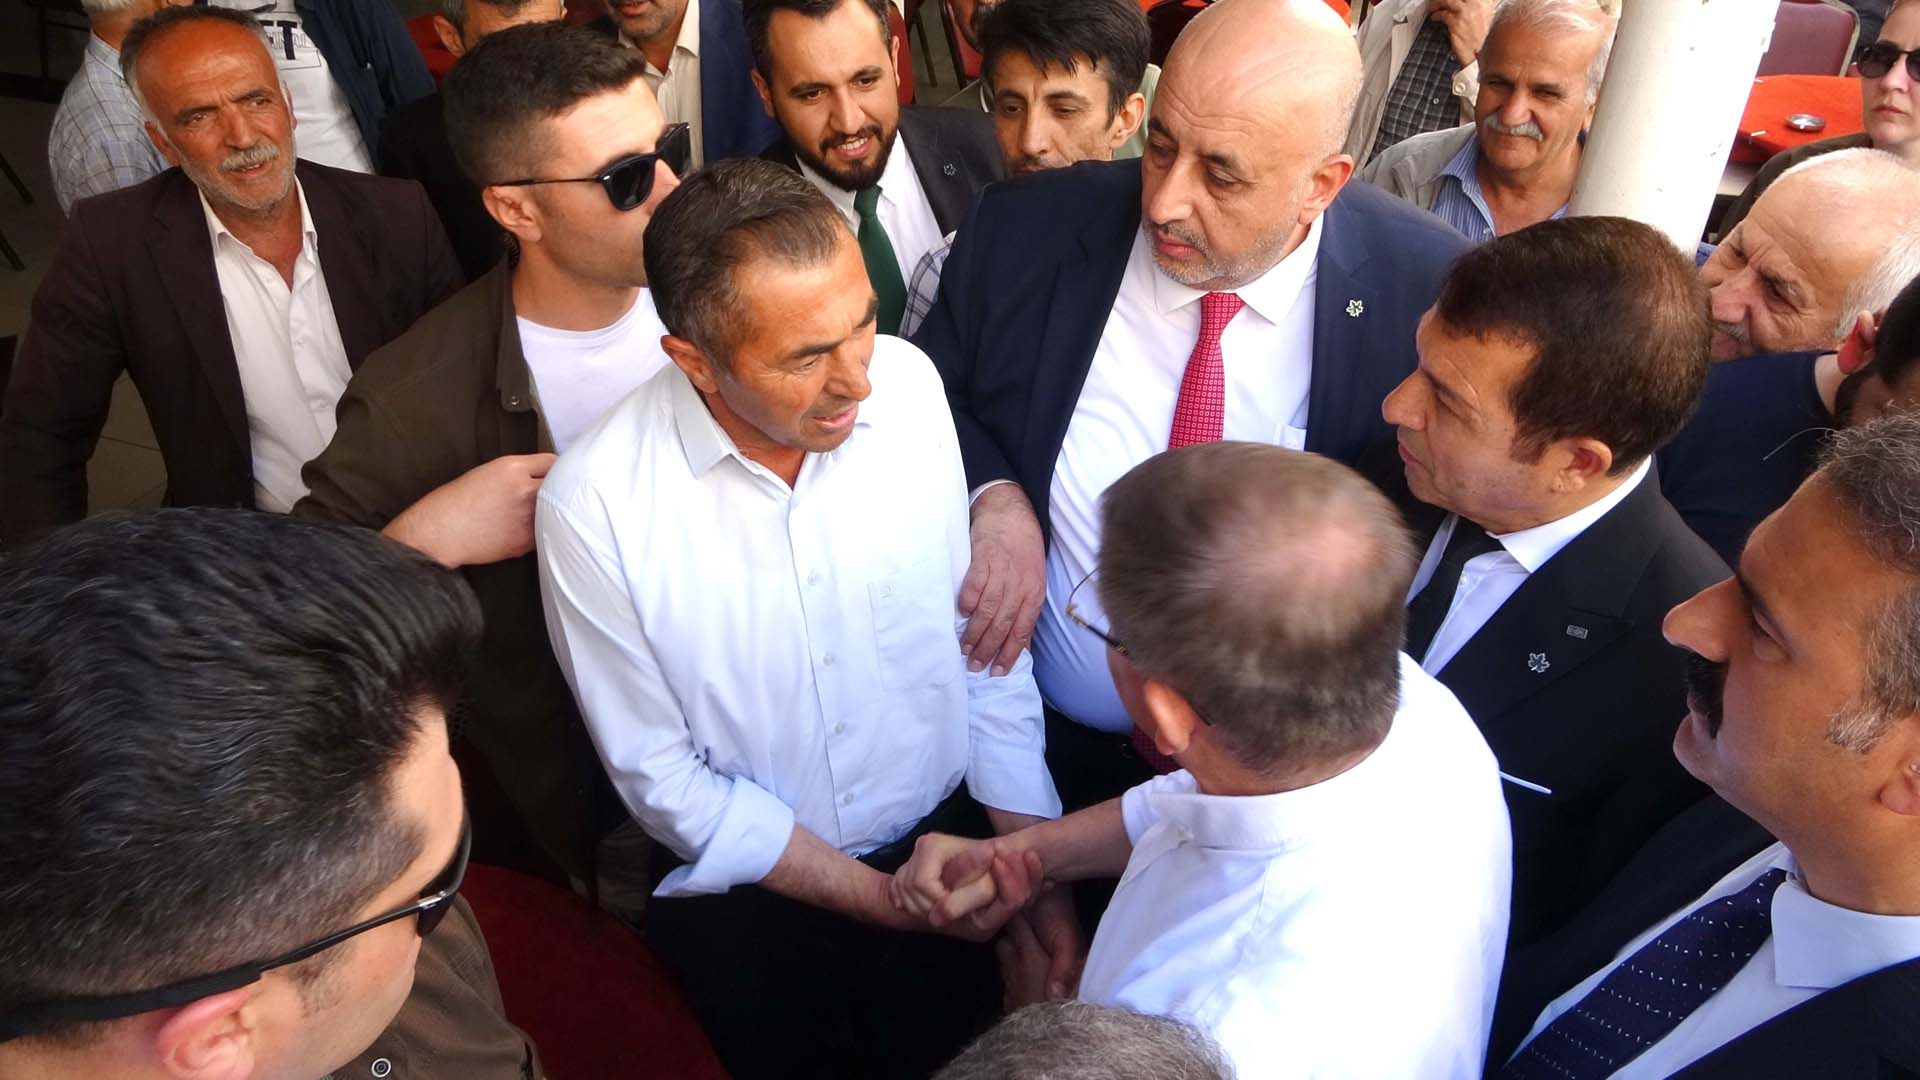 Adıyaman'da vatandaşlarla buluşan Ahmet Davutoğlu tepkiyle karşılandı! Altılı masadan ayrıl çıkışına olay yanıt verdi: Bakarız ona